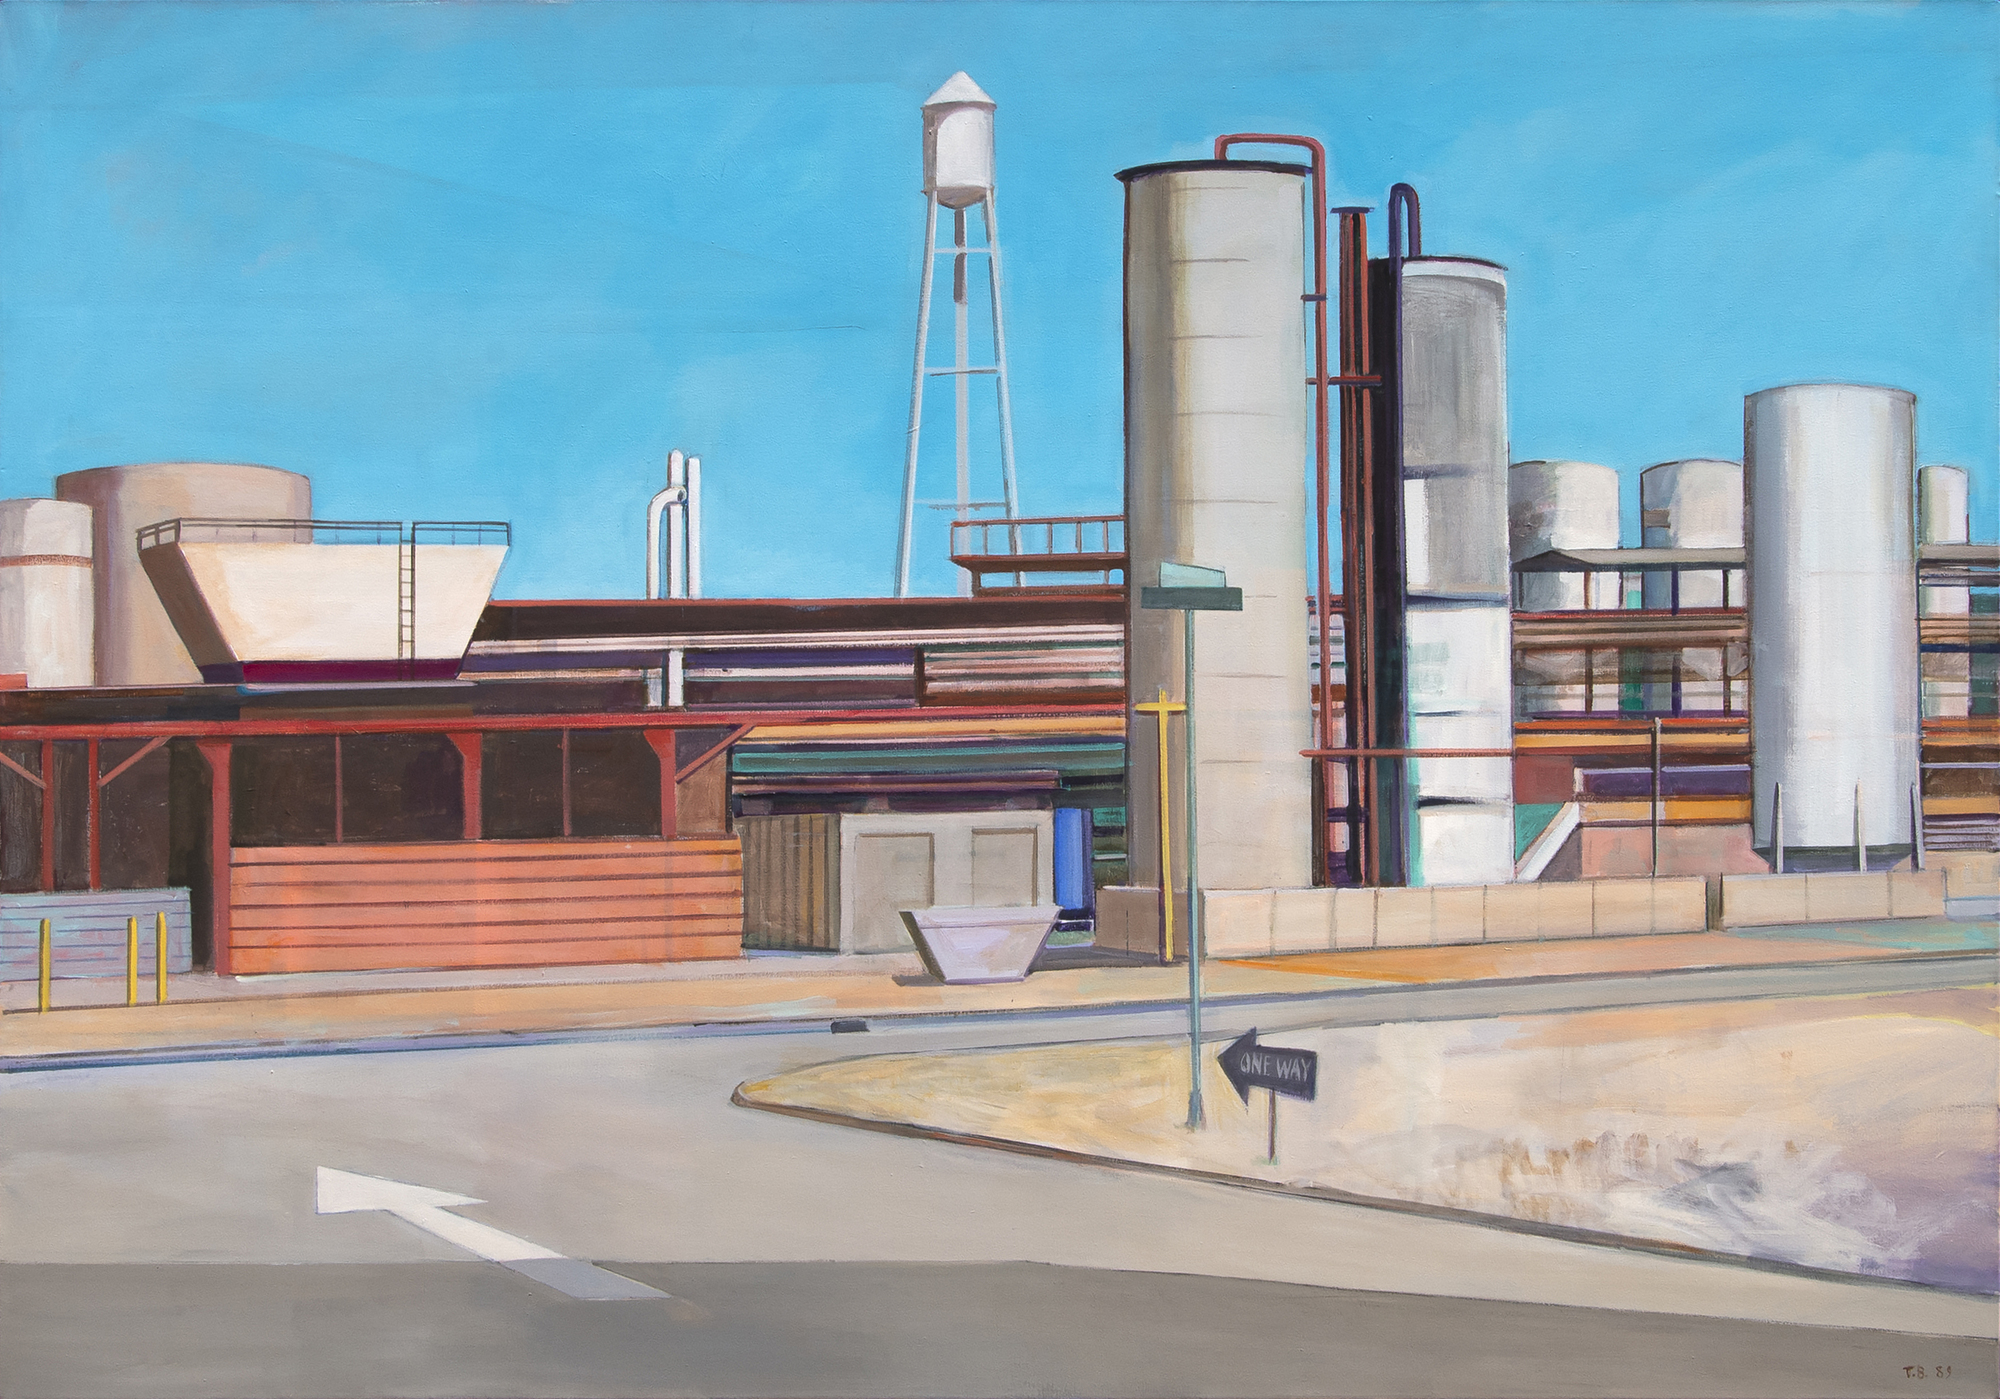 وليام ثيوفيليوس براون -- بدون عنوان (المناظر الطبيعية الصناعية مع شارع واحد الطريق) -- الاكريليك على قماش -- 54 × 76 في.